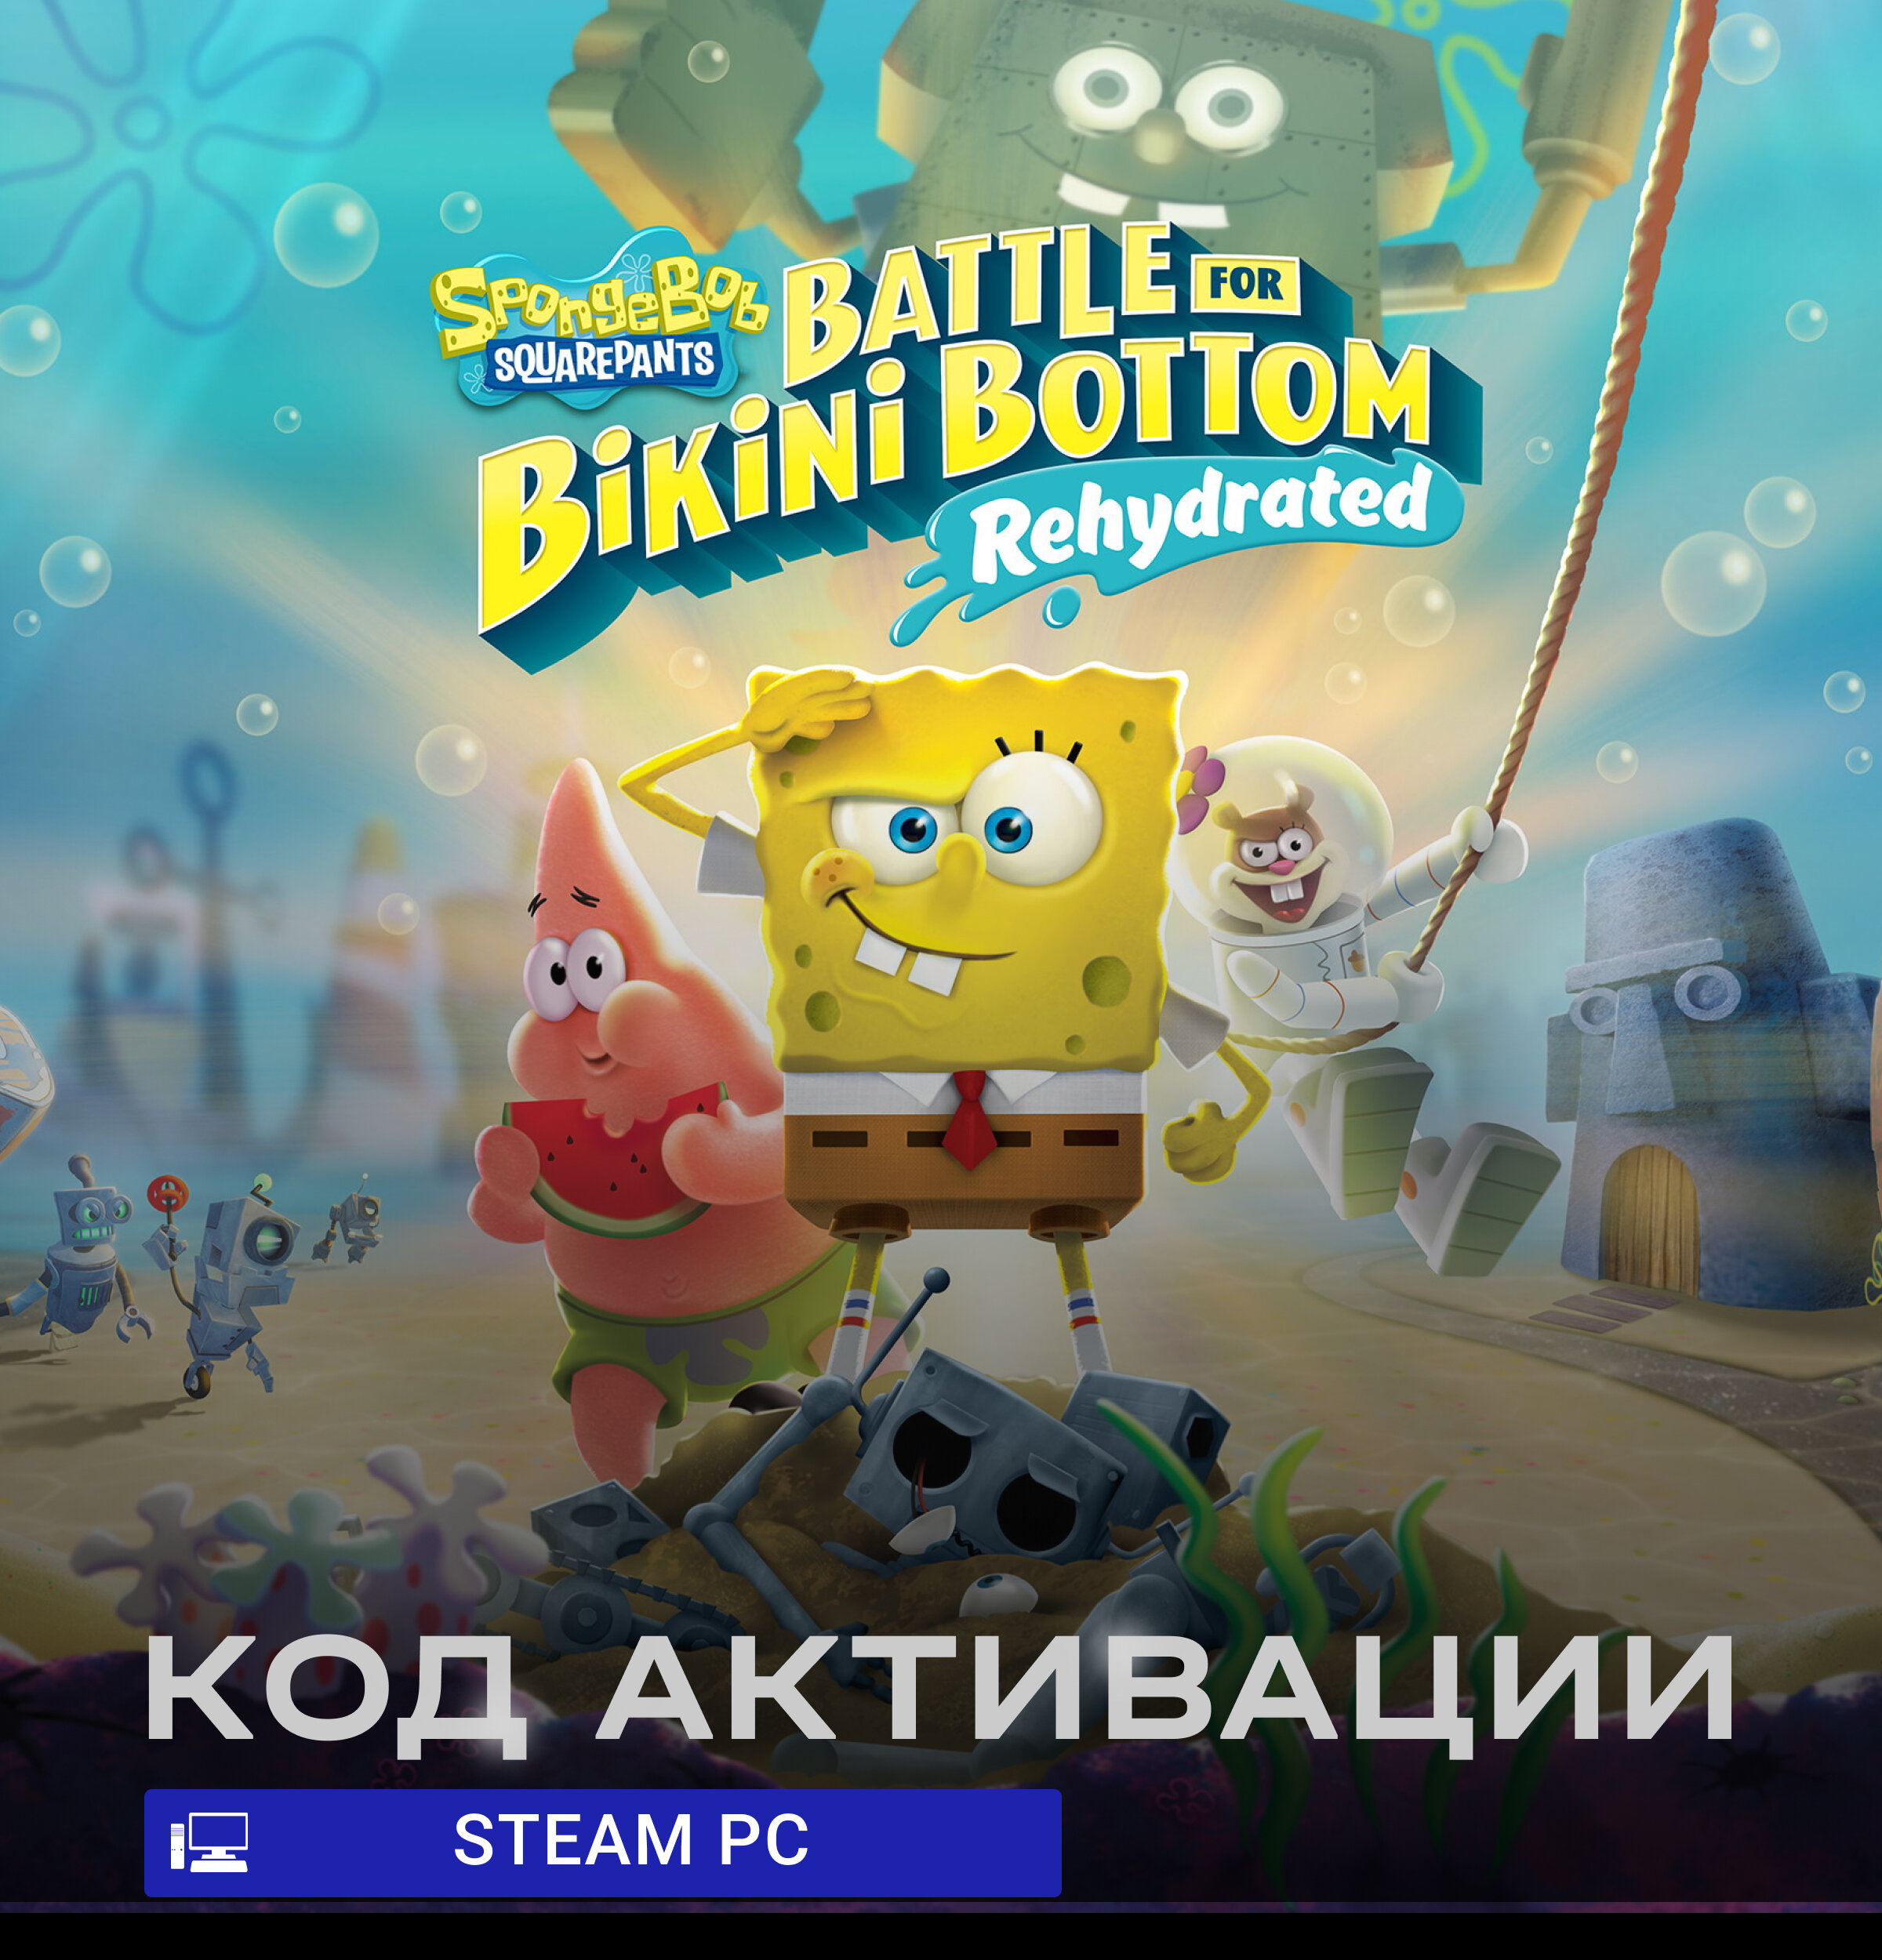 Игра SpongeBob SquarePants: Battle for Bikini Bottom - Rehydrated для PC Steam (Все страны) русские субтитры/интерфейс электронный ключ